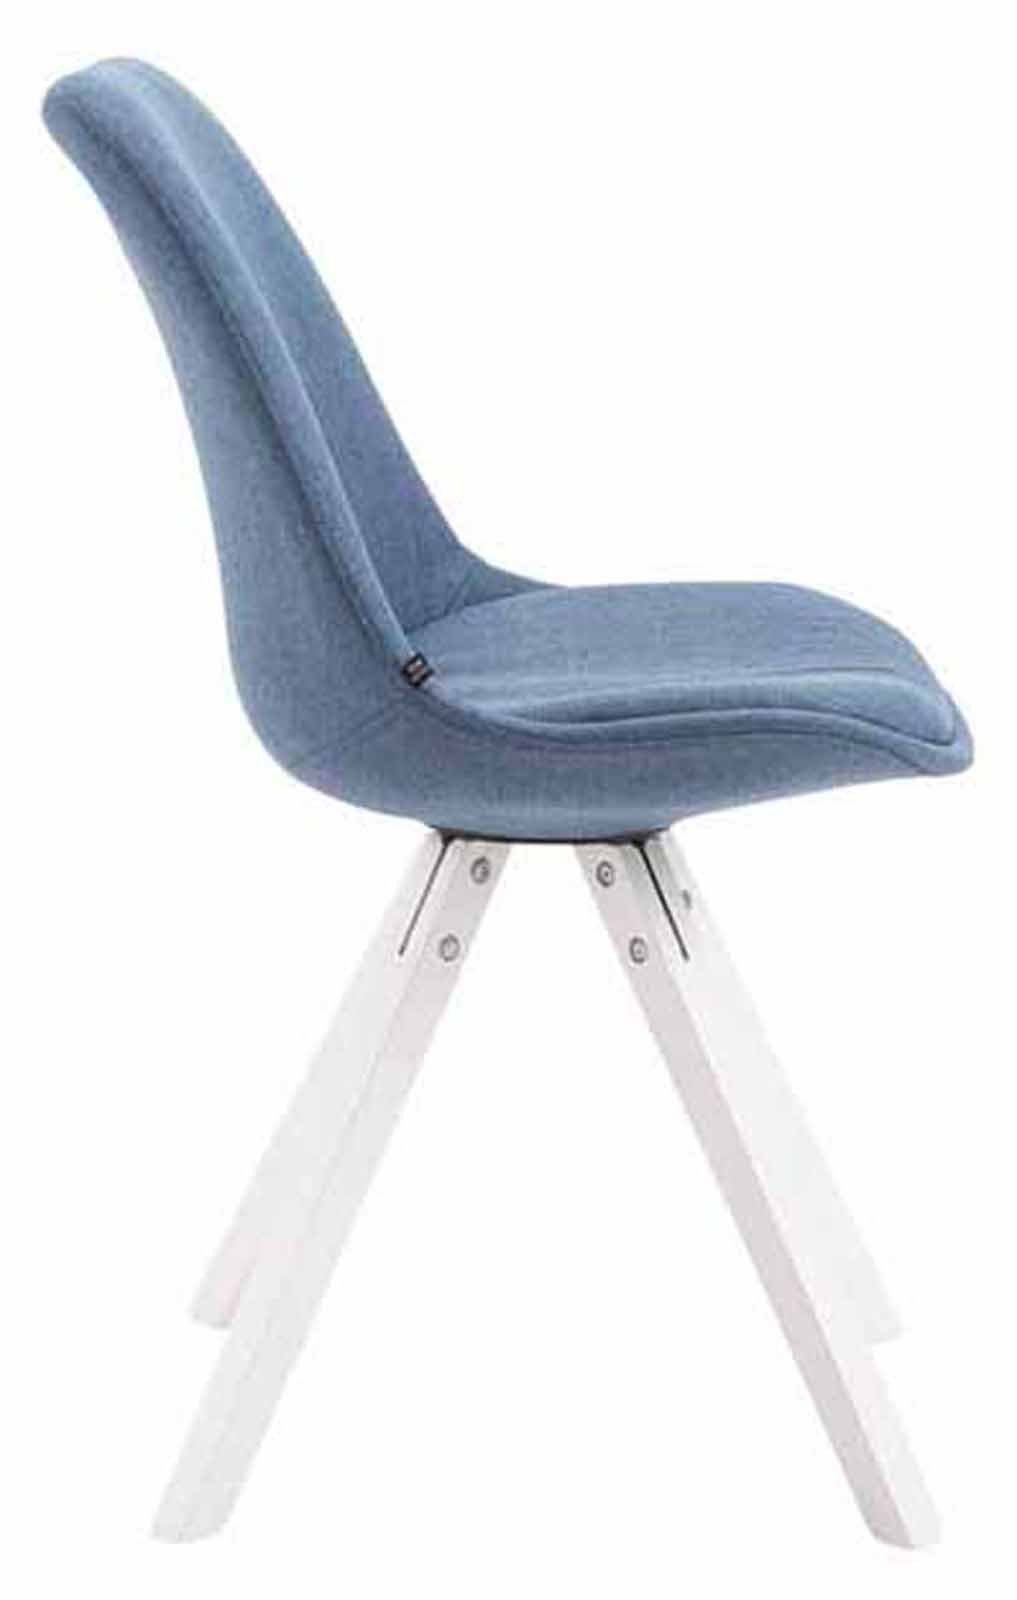 (Küchenstuhl Esszimmerstuhl Buchenholz Toulon St), - - hochwertig Wohnzimmerstuhl, - gepolsterter Sitzfläche: Besucherstuhl - mit blau weiß Stoff 4 Konferenzstuhl Gestell: TPFLiving Sitzfläche